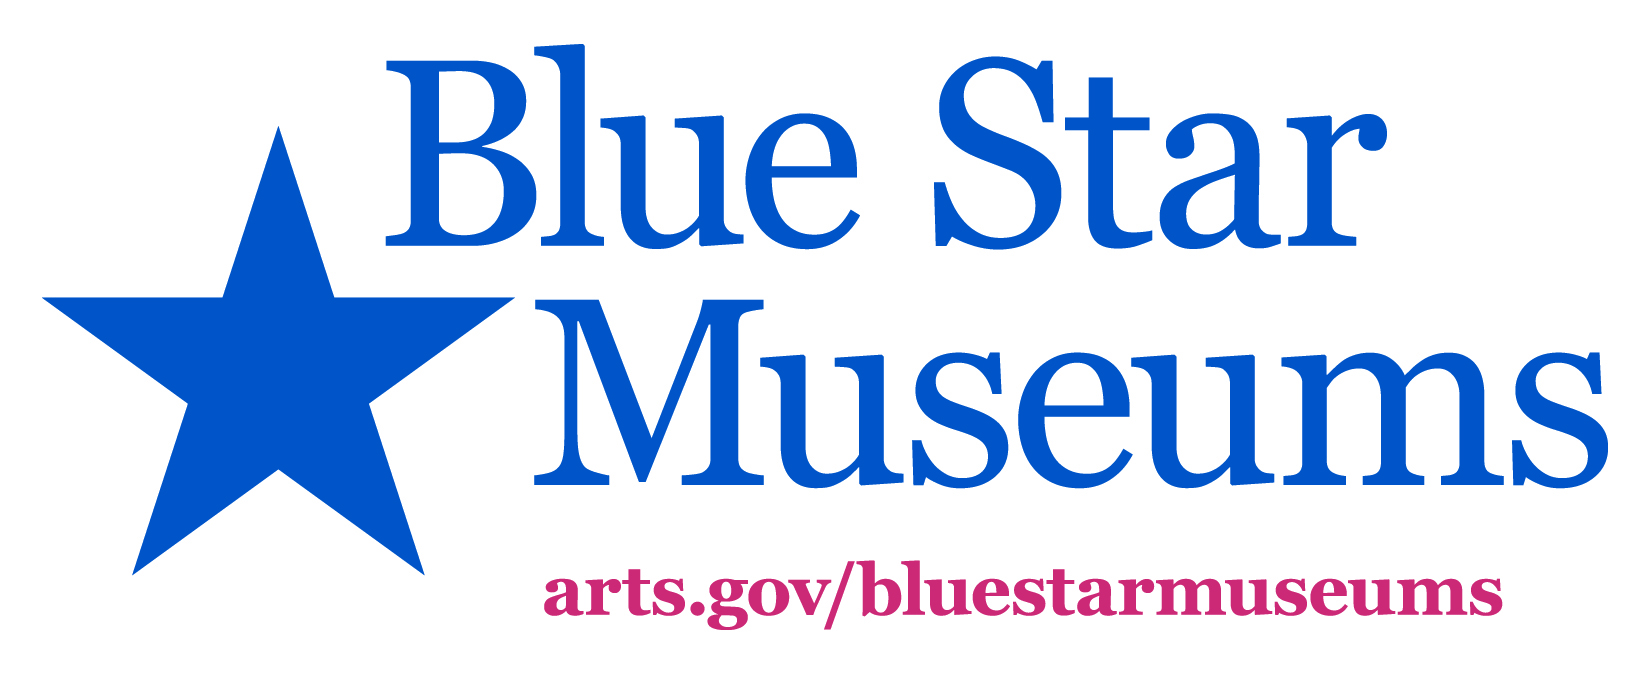 Blue Star Museums logo including URL to arts.gov/bluestarmuseums